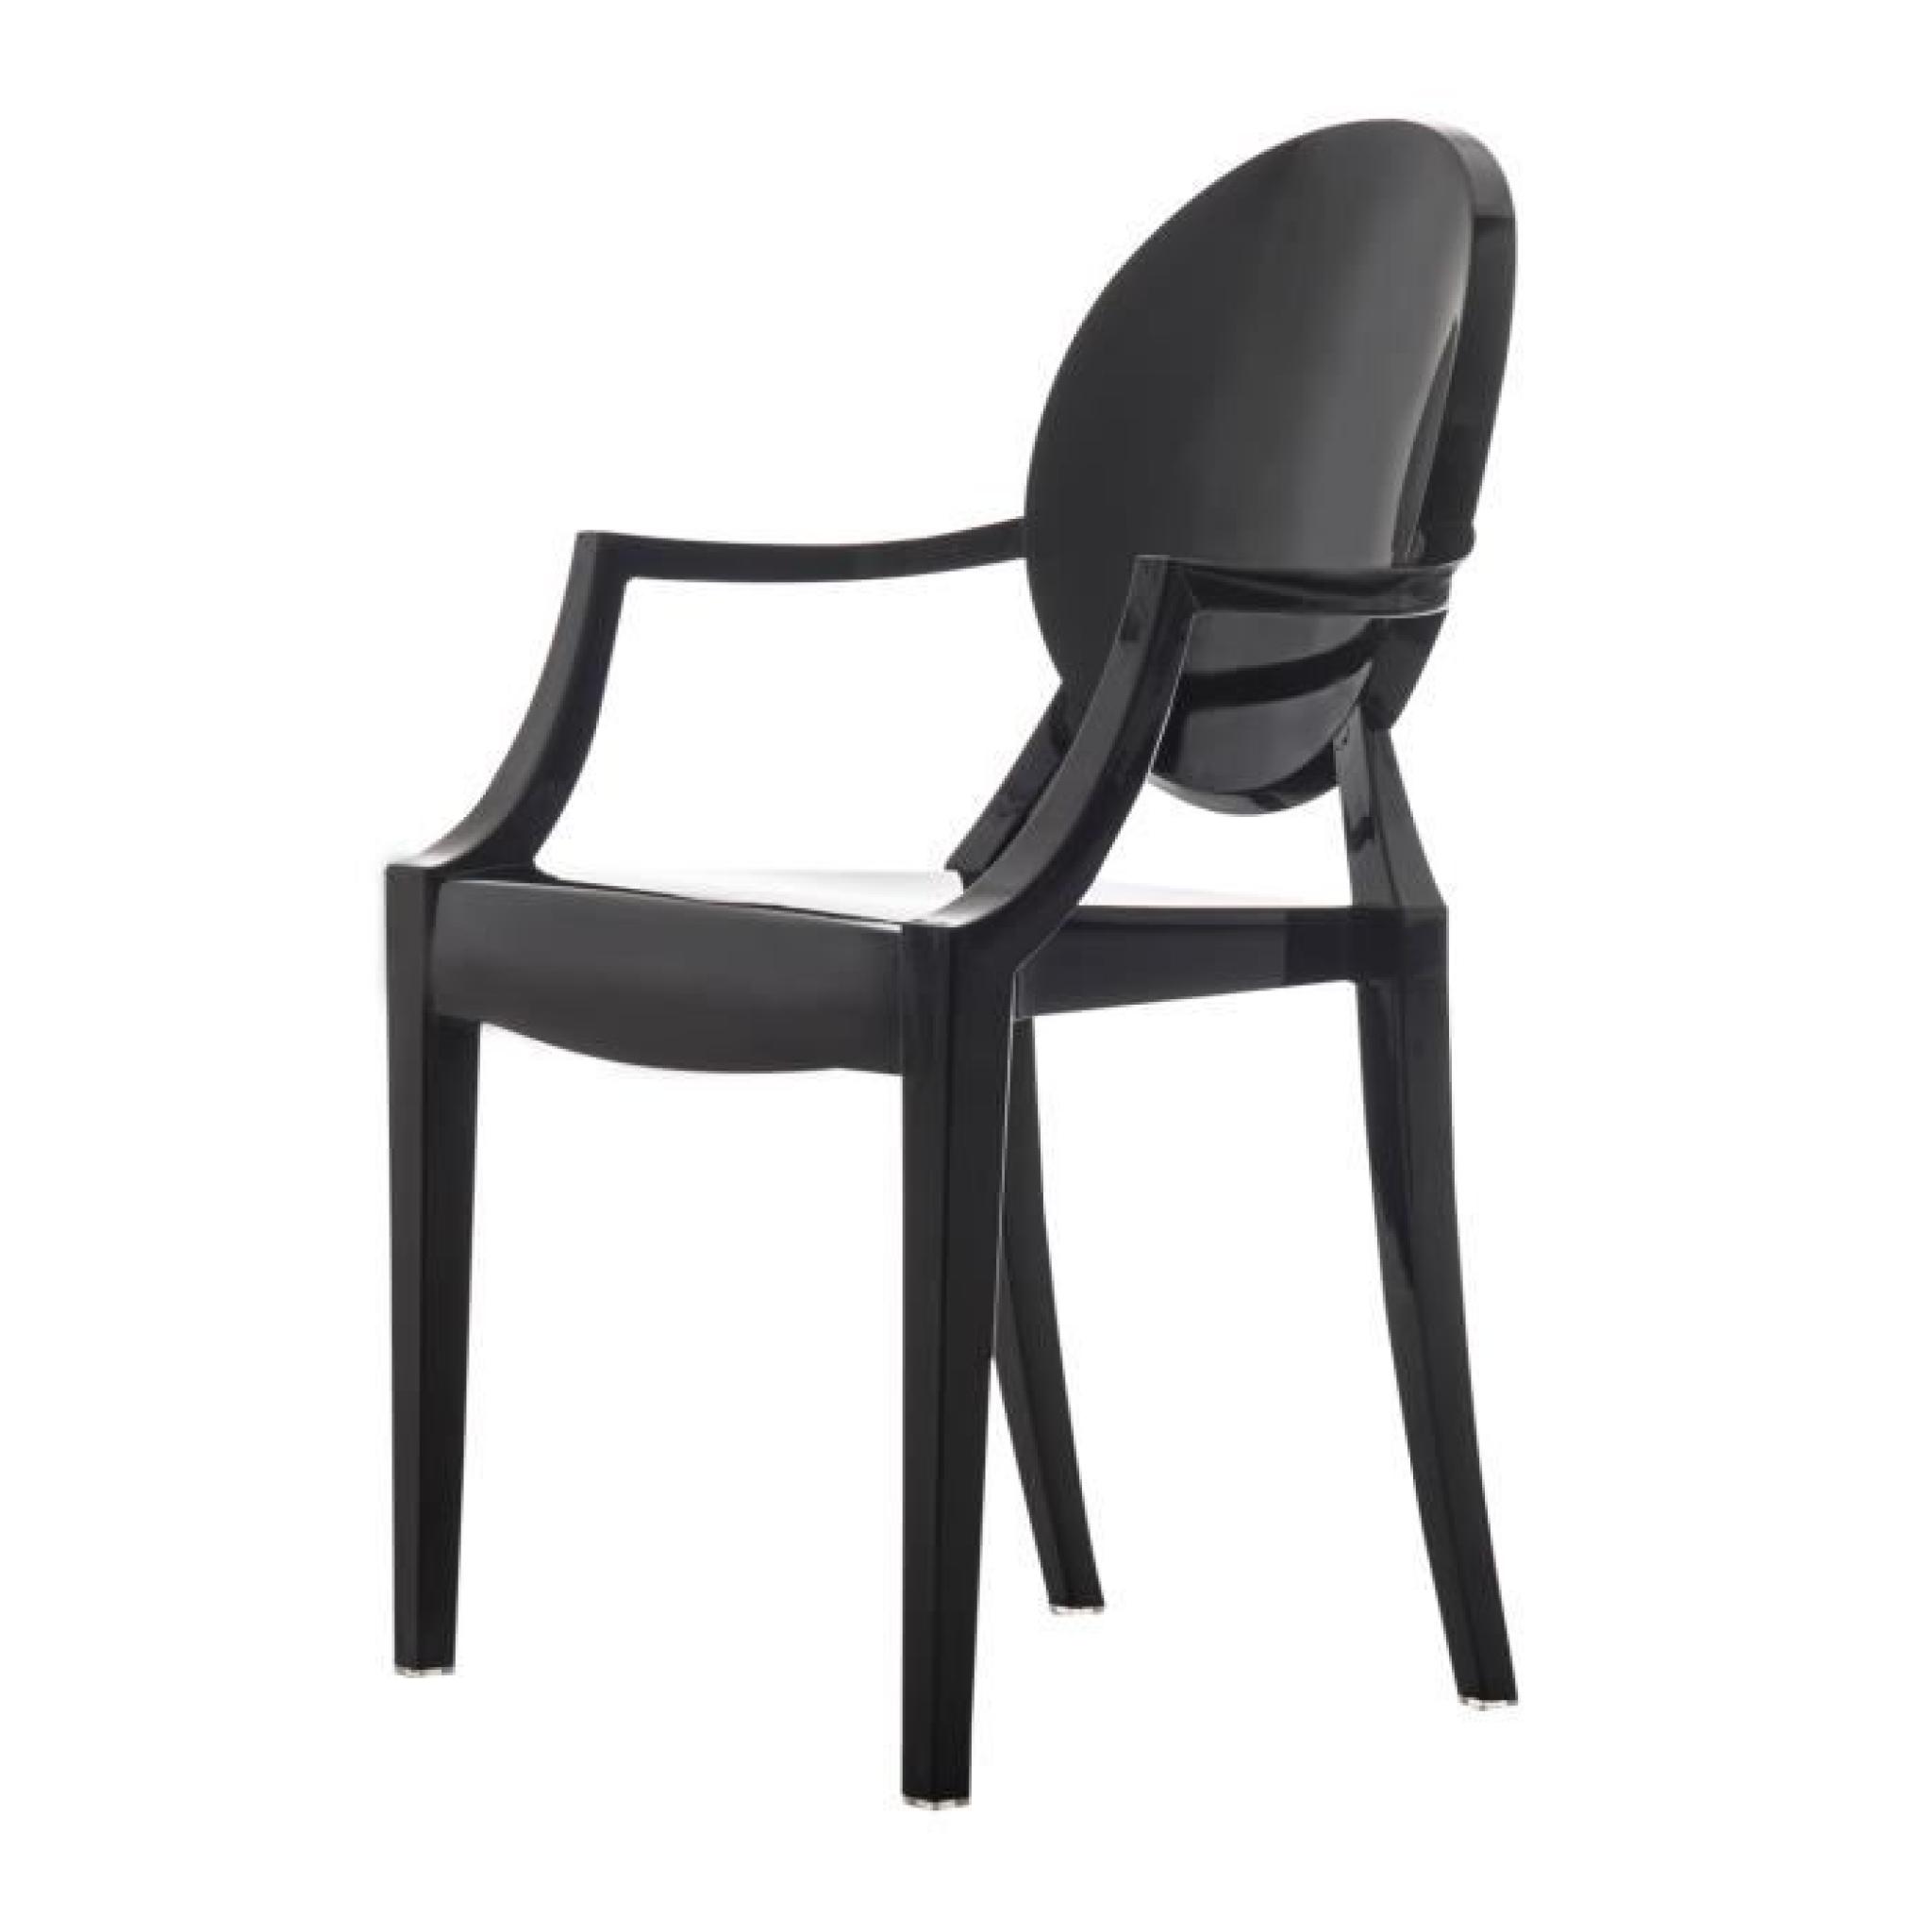 2/set Ghost Chaise avec accoudoirs dossier chaise de cuisine table à manger bureau chambre chaise de jardin meuble noir neuf 01BK pas cher